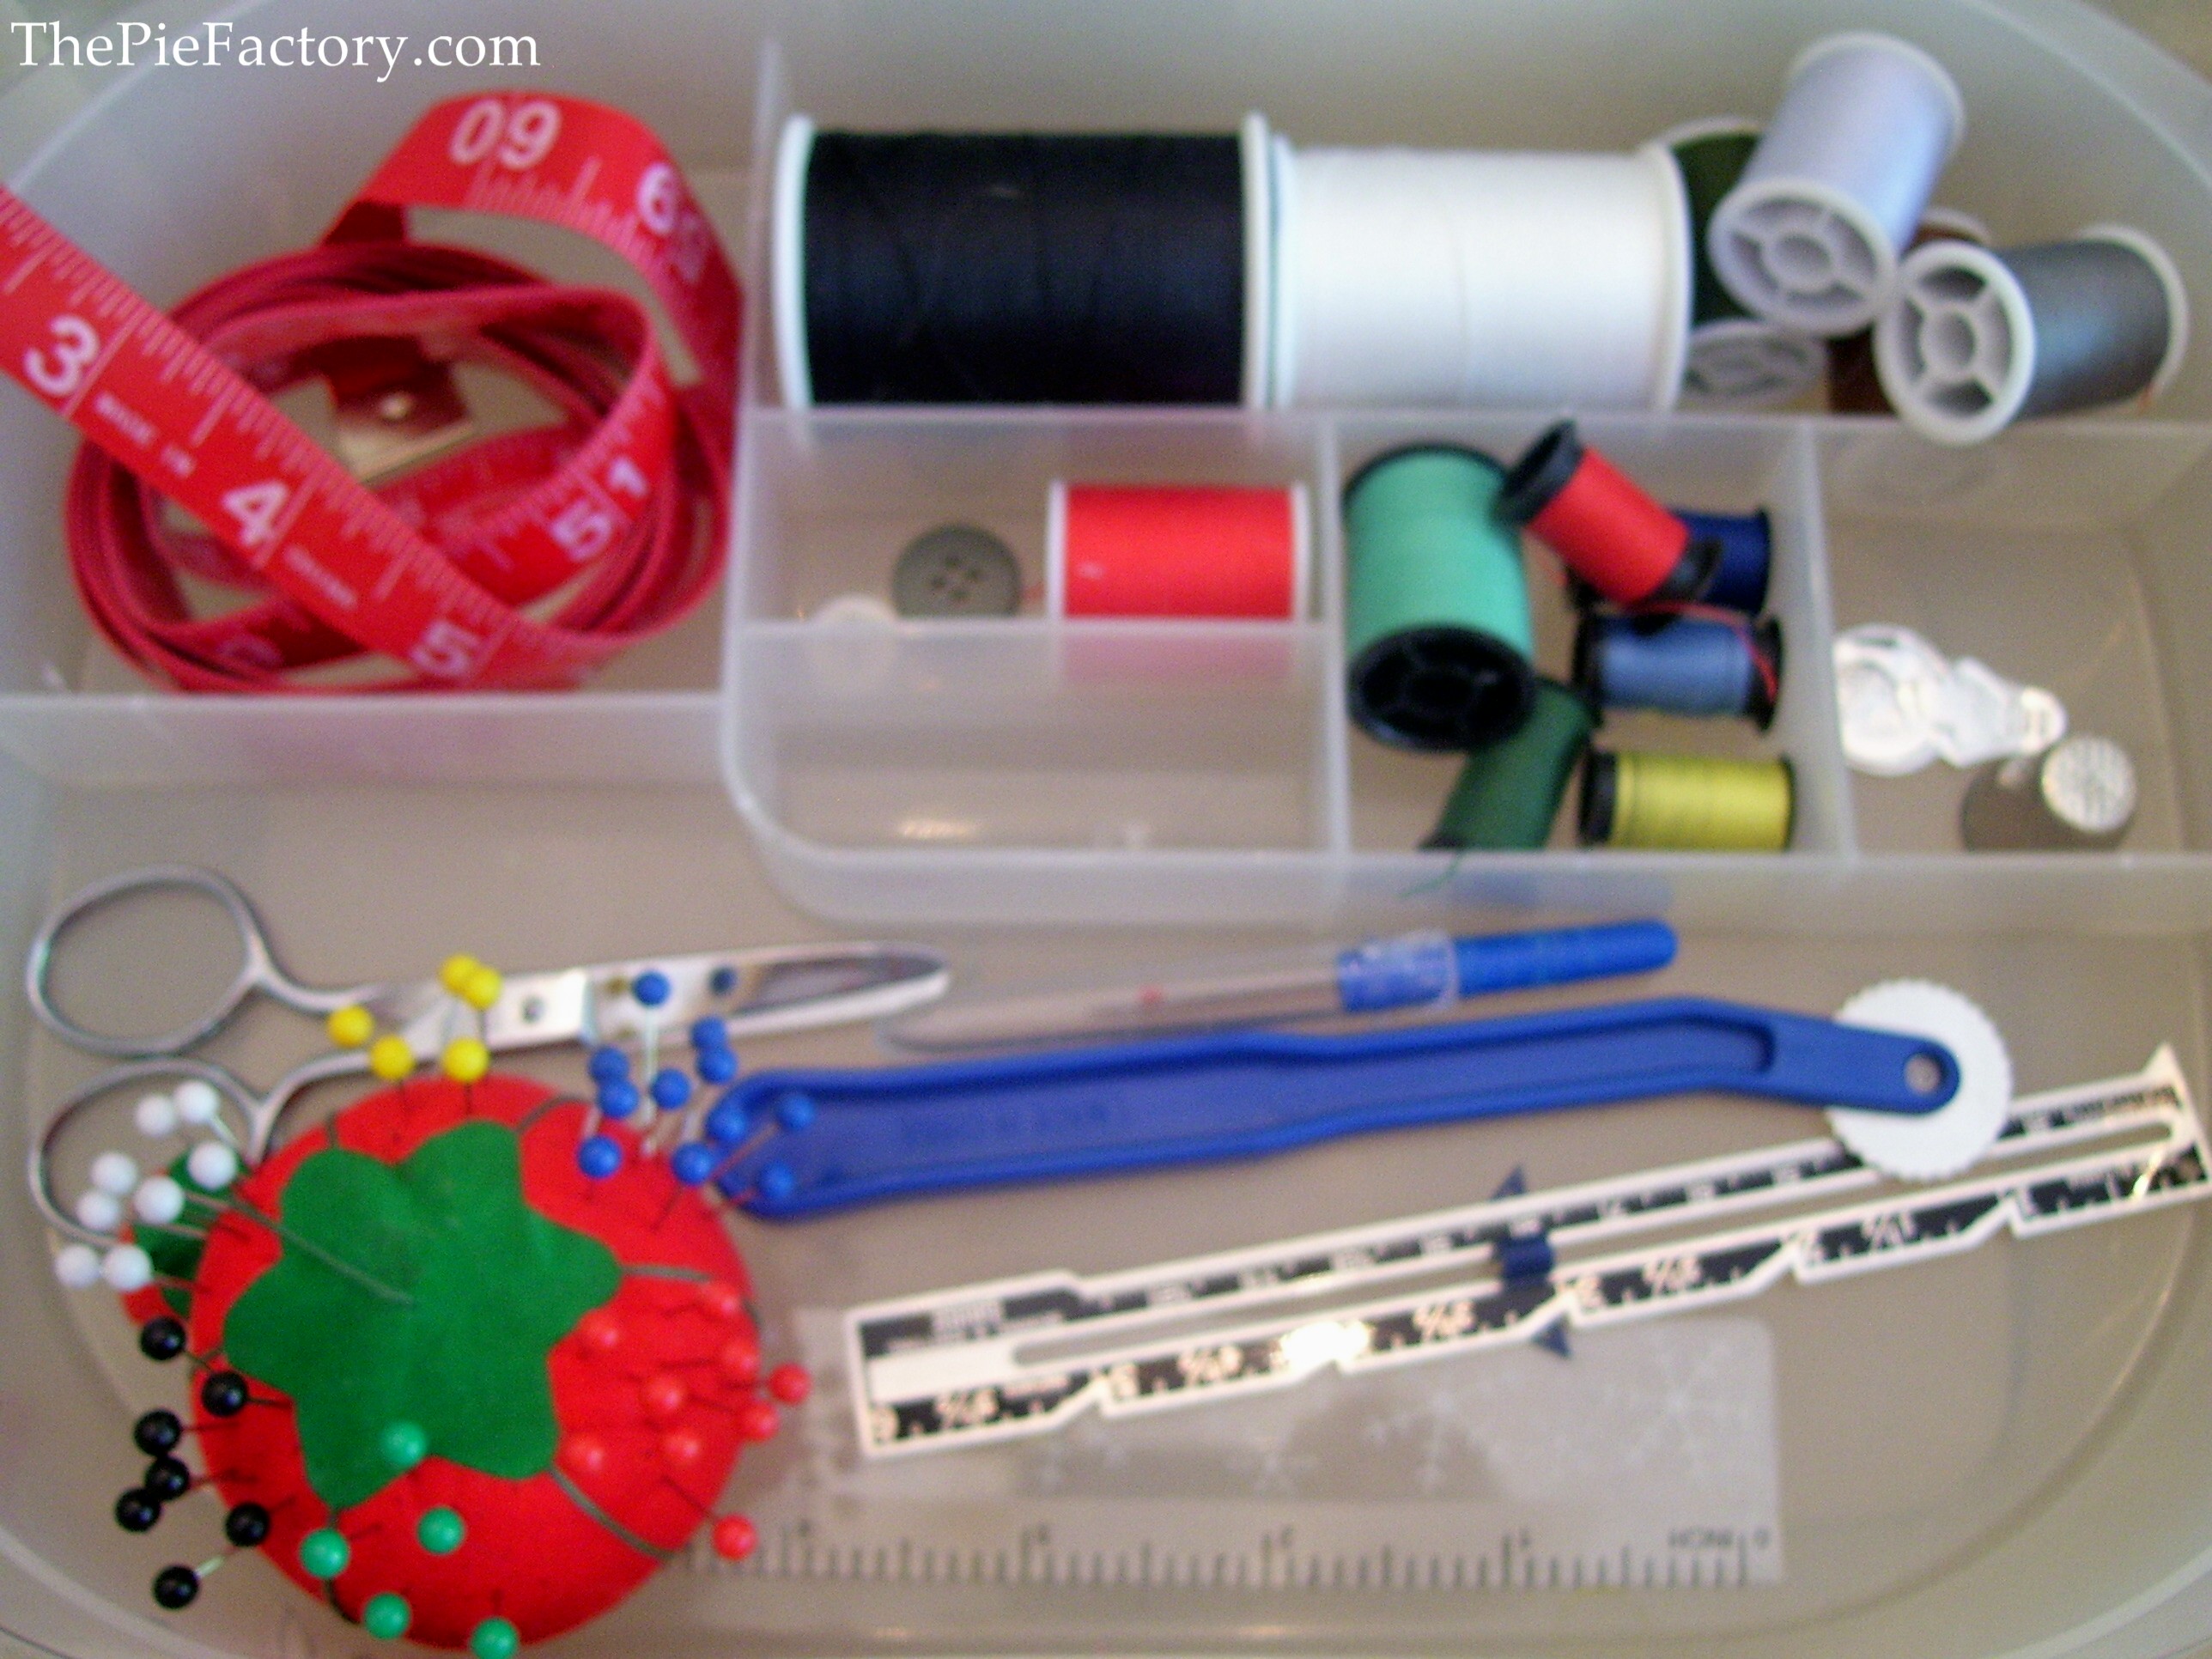 Basic Sewing Kit